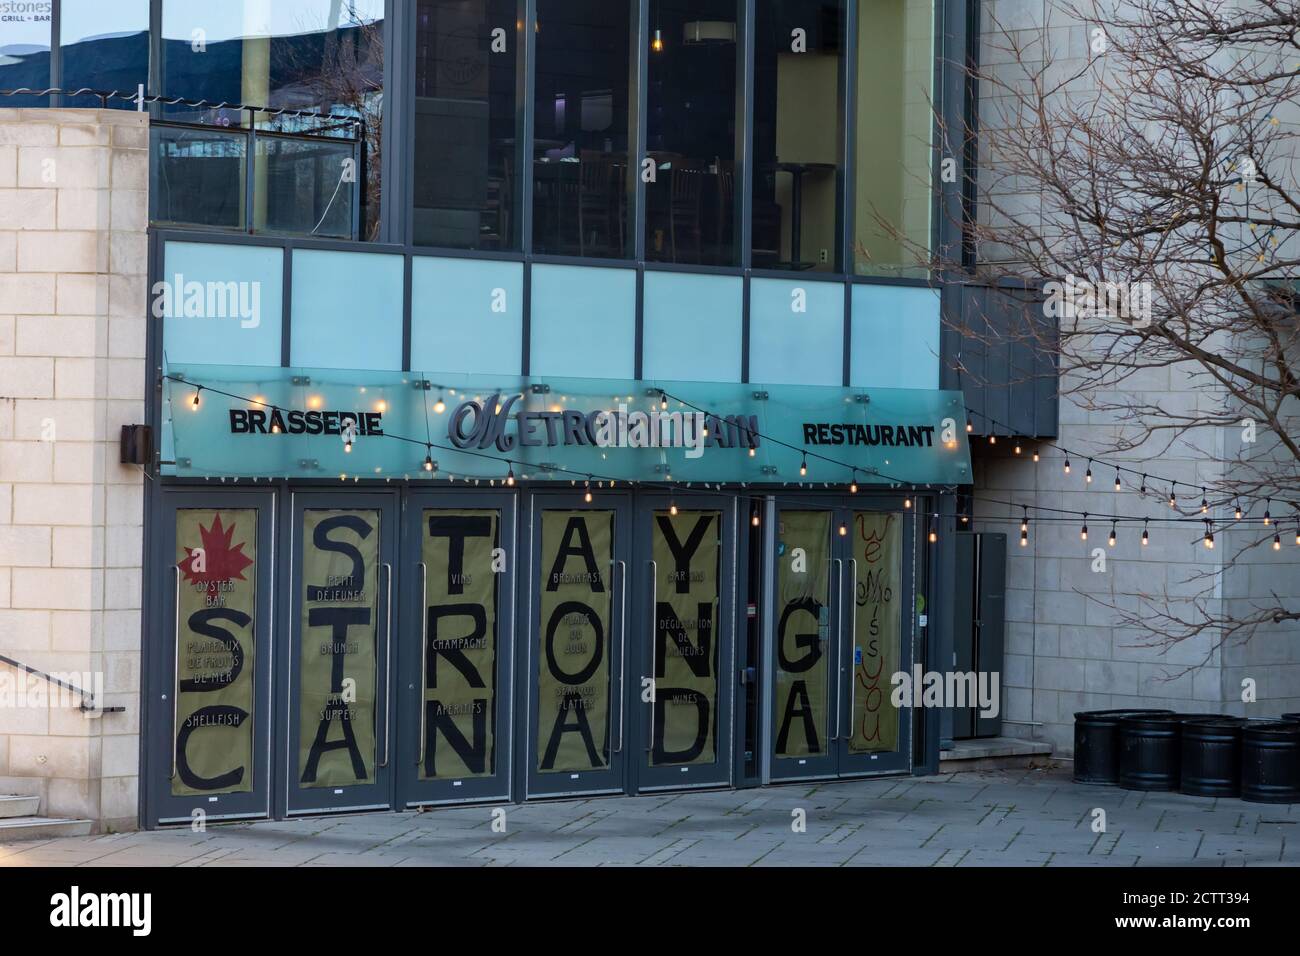 Im Mai 2020 wurde in einer Botschaft an den Türen des Metropolitan Restaurants in der Innenstadt von Ottawa während der COVID-19-Pandemie „Stay Strong Canada“ verlautet. Stockfoto